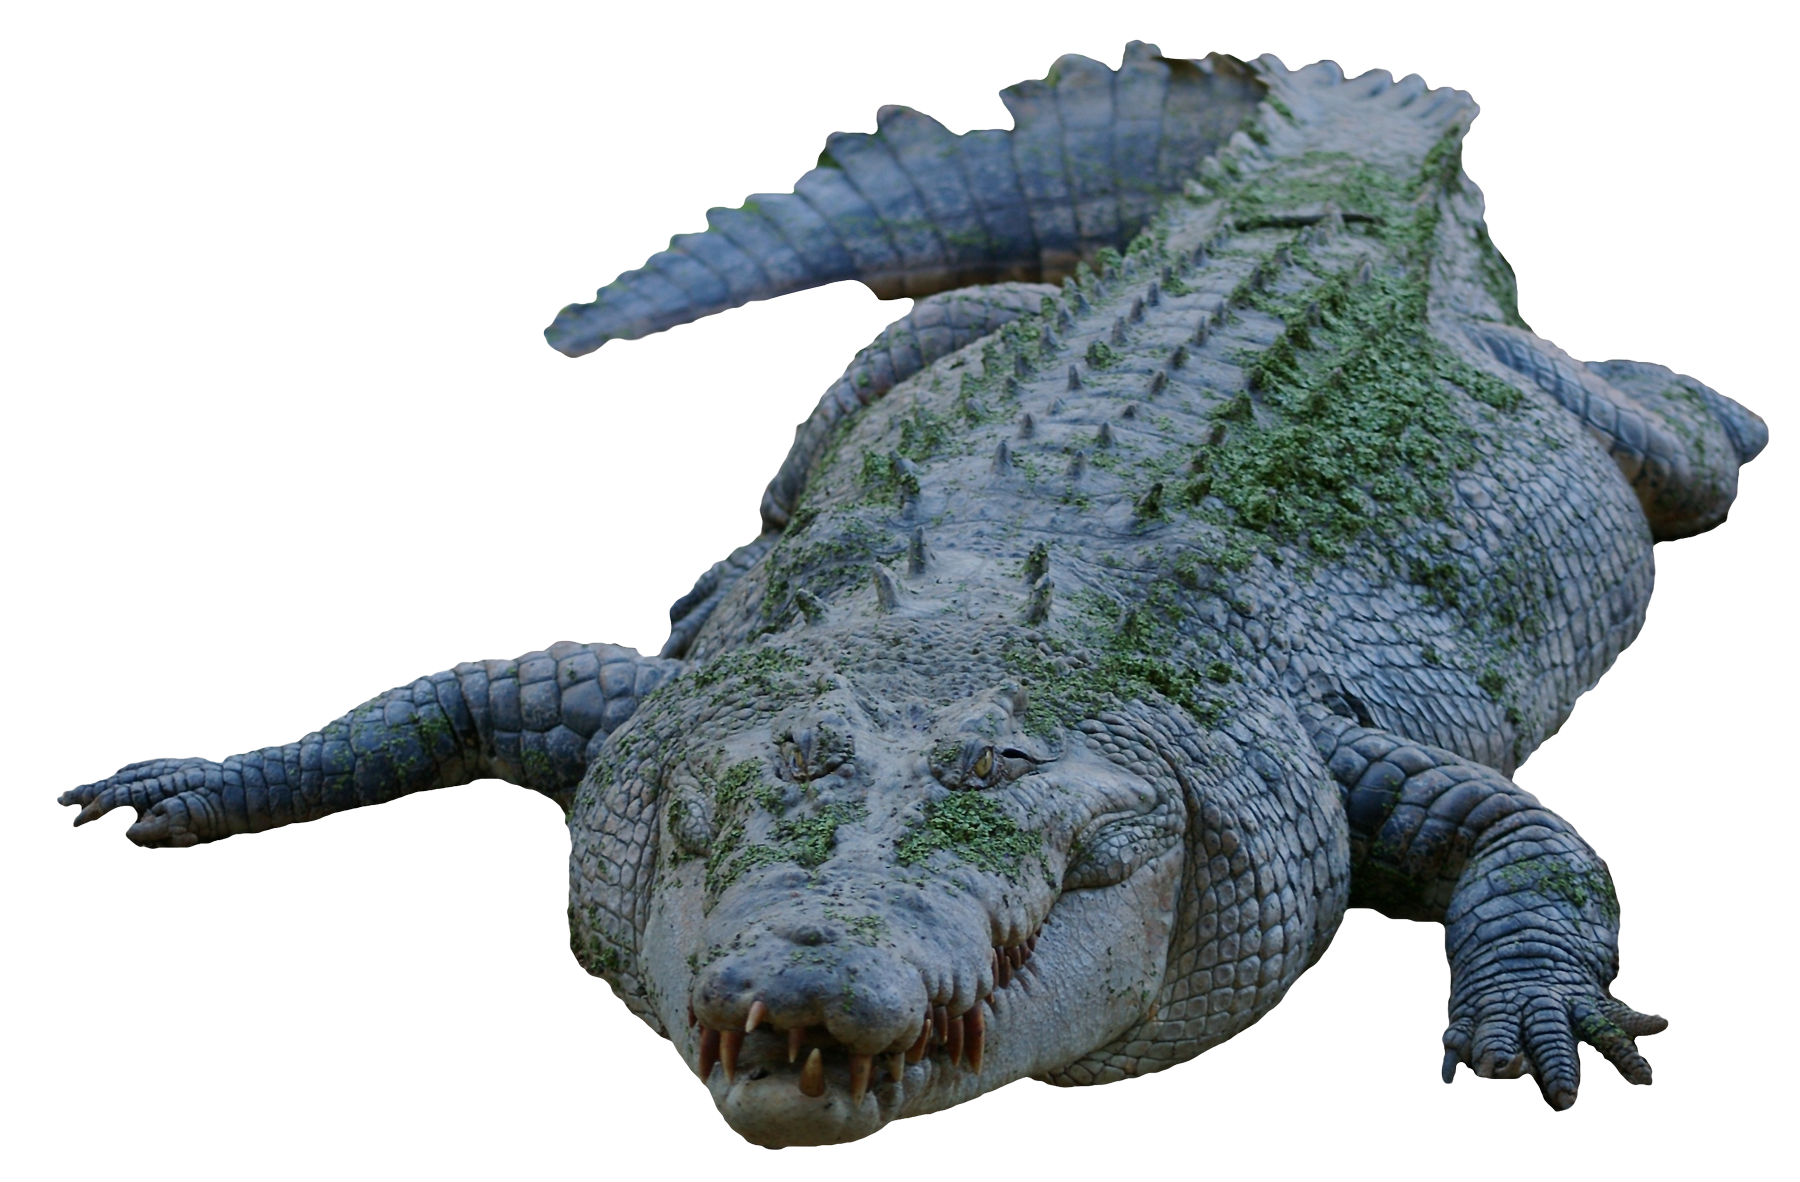 alligator, crocodile png transparent image pngpix #28860